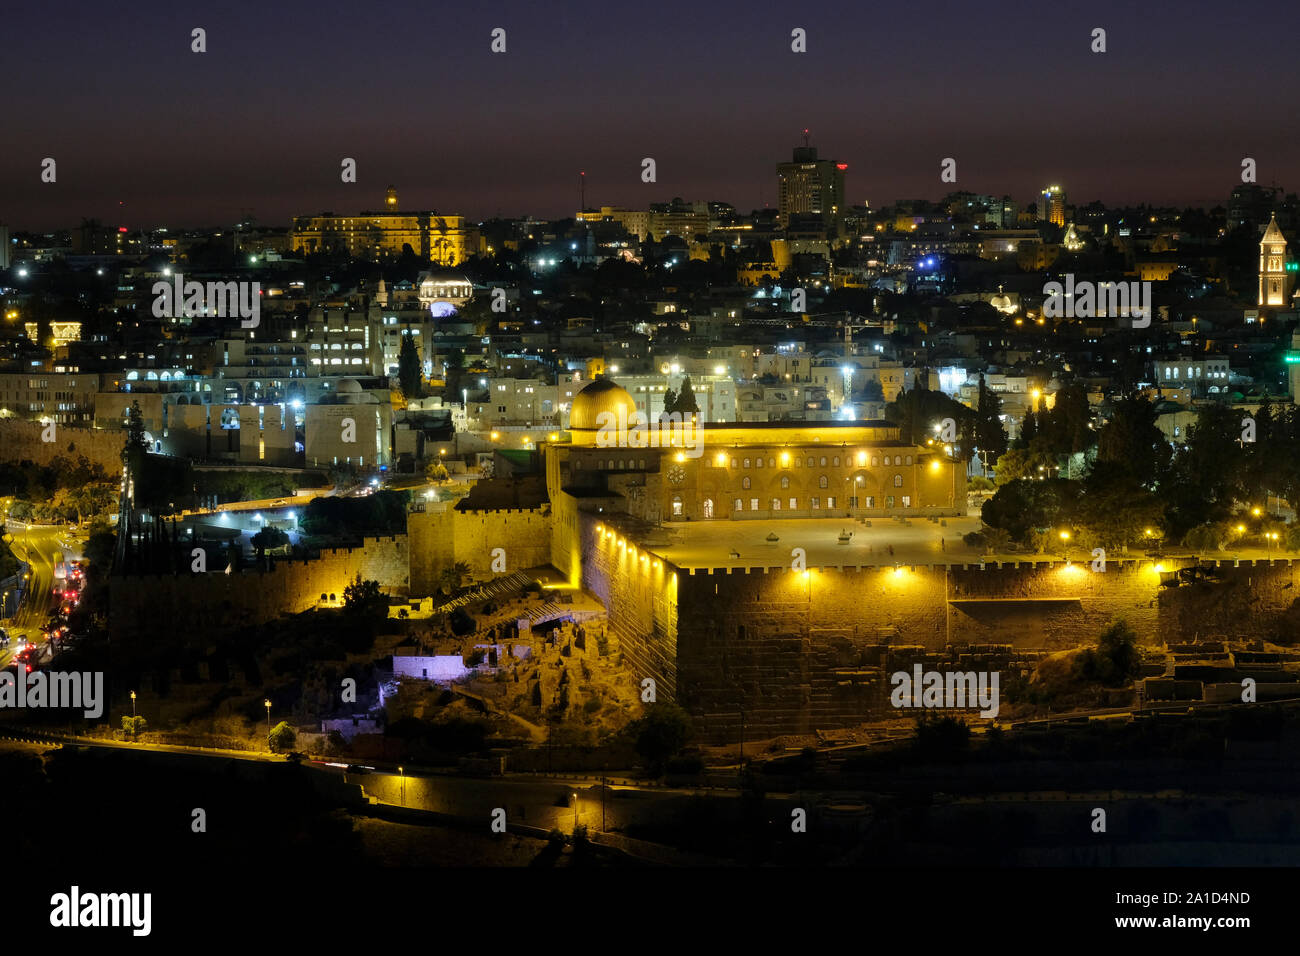 Ammira al crepuscolo la moschea di al-AKSA costruita sulla cima del Monte del Tempio, conosciuta come il complesso di al Aqsa o Haram esh-Sharif nella città vecchia Gerusalemme est Israele Foto Stock